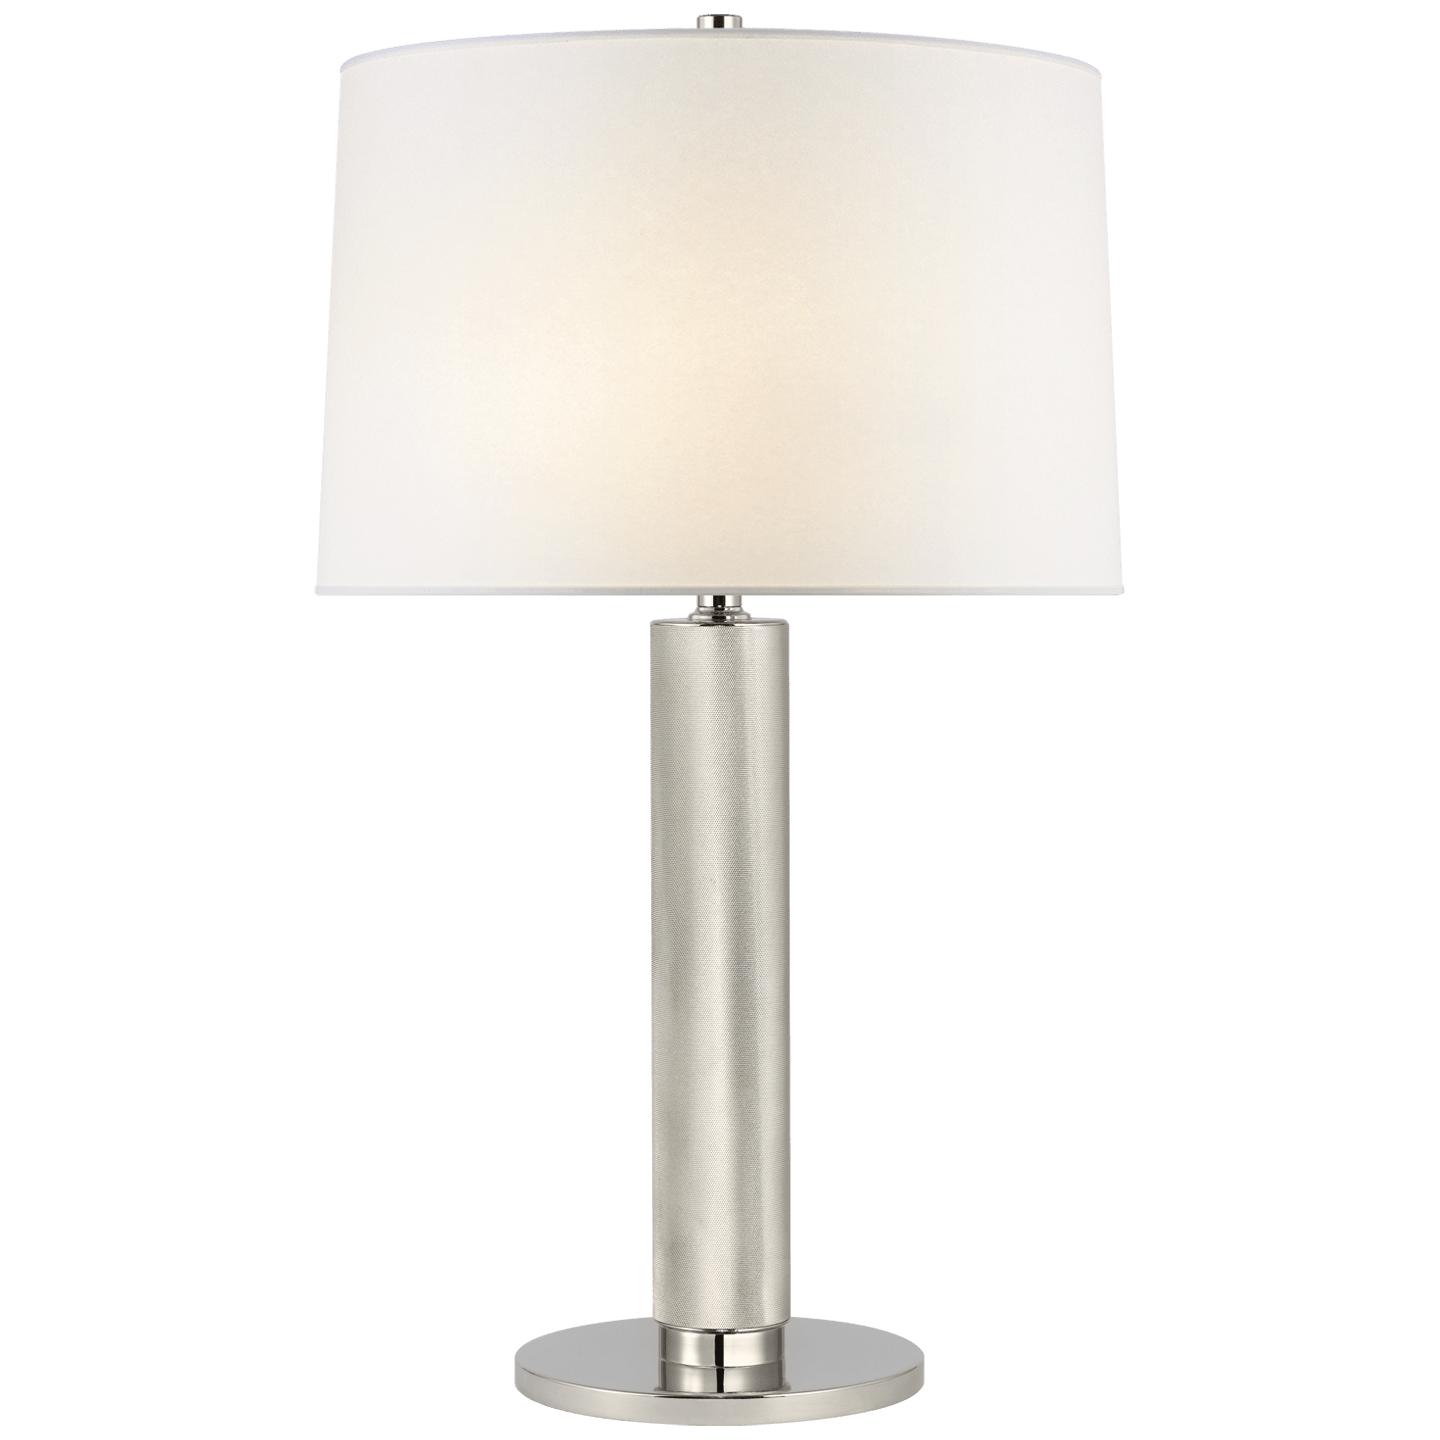 Купить Настольная лампа Barrett Medium Knurled Table Lamp в интернет-магазине roooms.ru